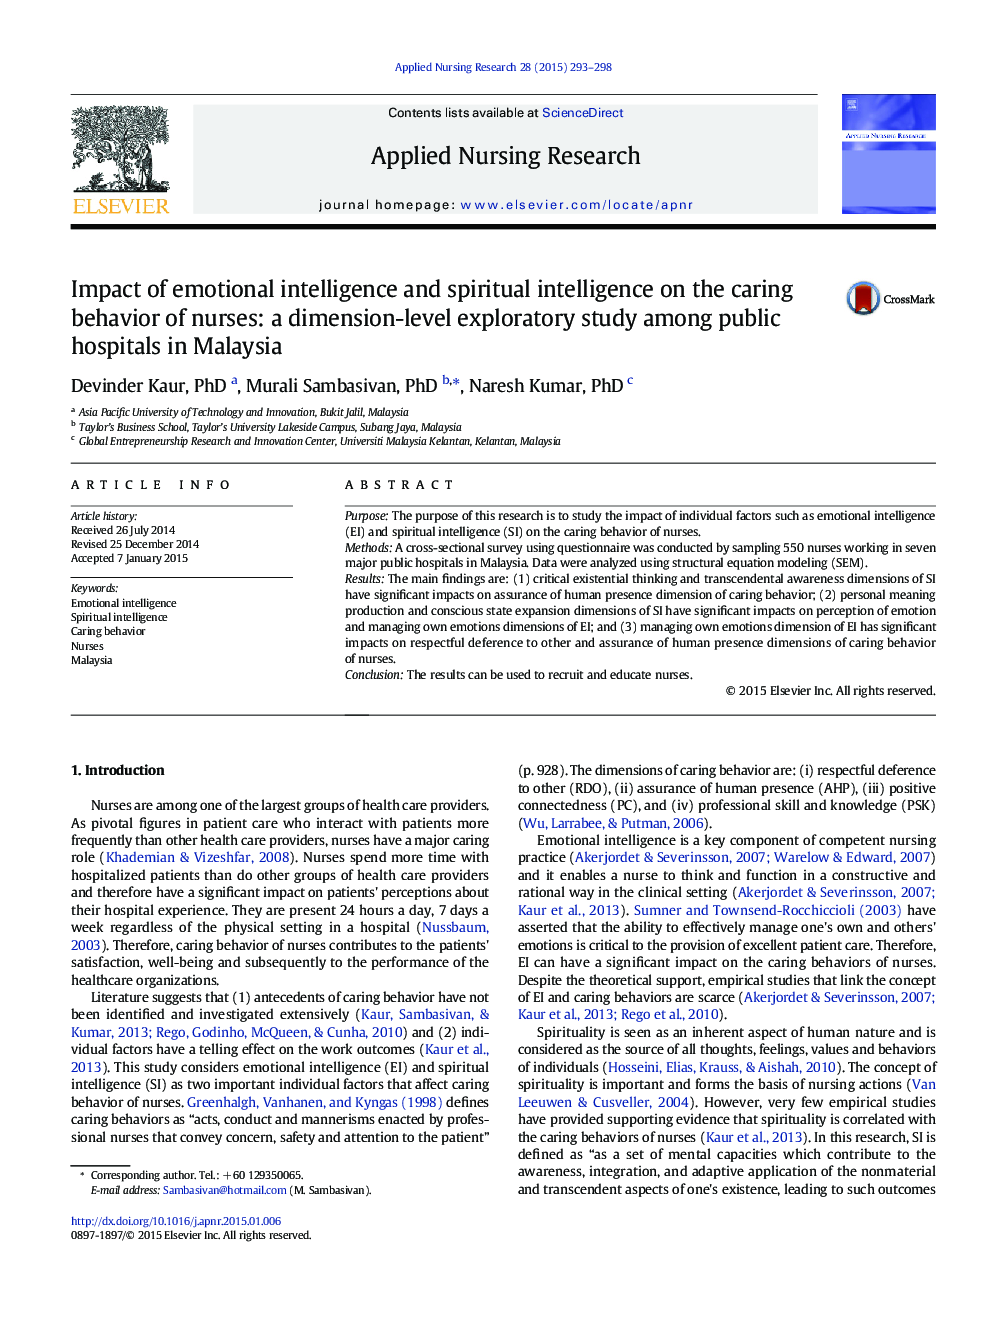 تأثیر هوش هیجانی و هوش معنوی بر رفتار مراقبتی پرستاران: یک مطالعه اکتشافی در سطح درمان در بیمارستان های دولتی در مالزی